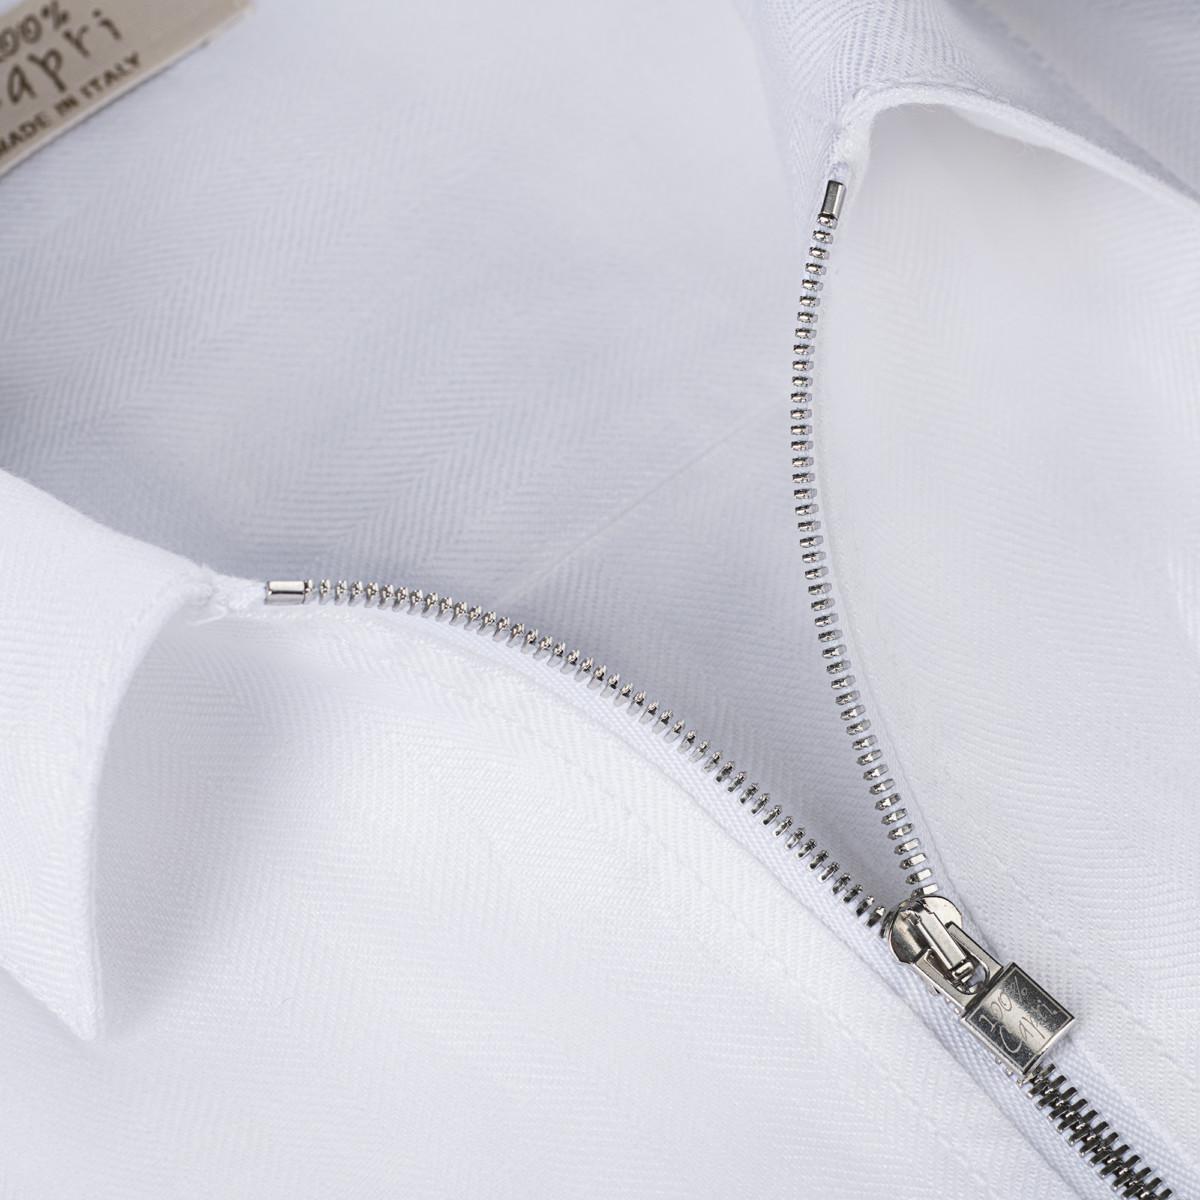 Camicia Zip Malta 100% Capri for man linen white shirt detail